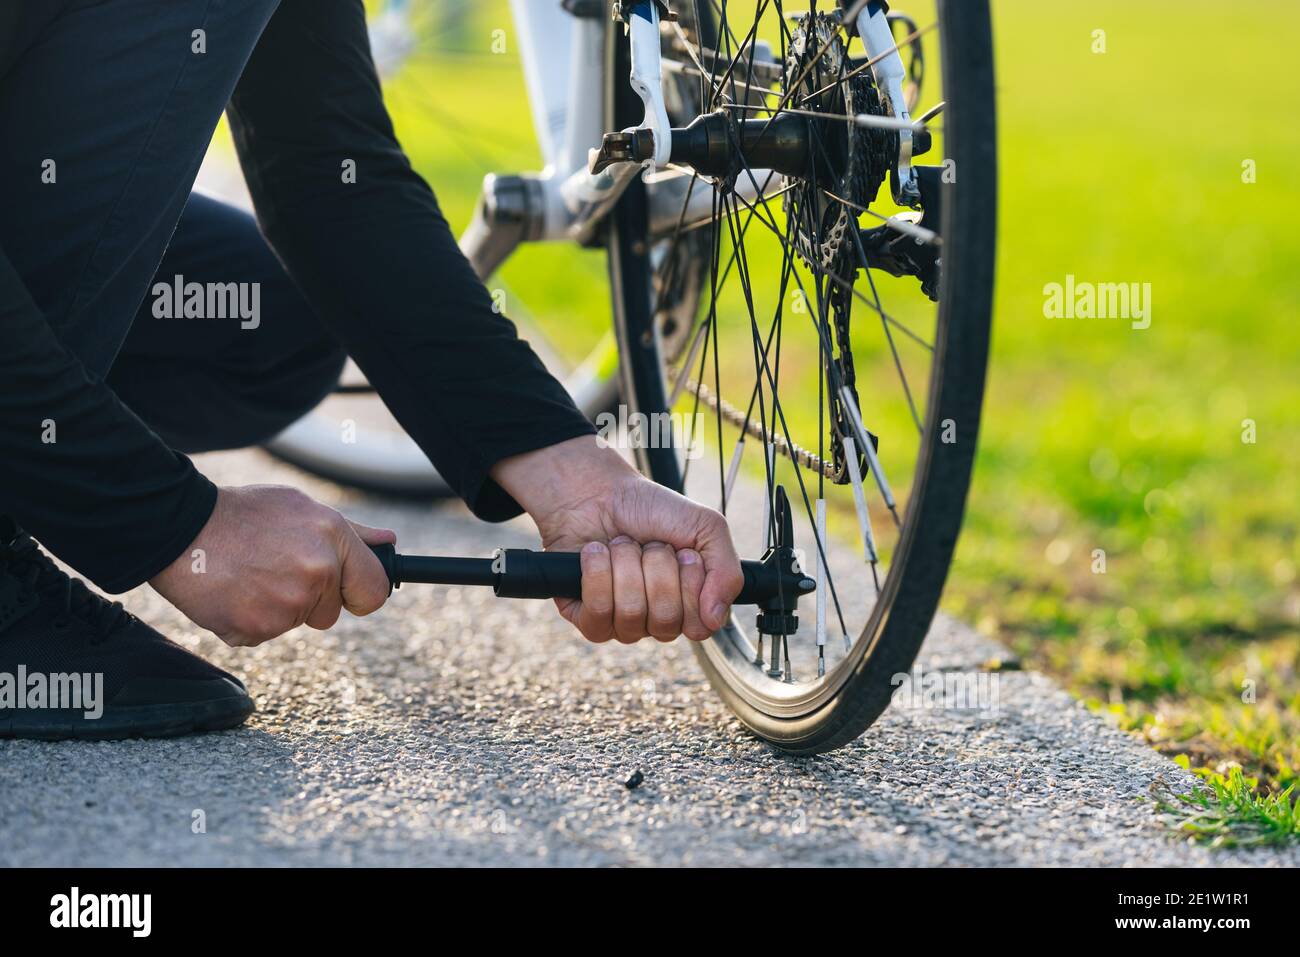 Mann pumpt Fahrrad Rad im Park. Der Mann pumpt das Rad mit einer Pumpe auf.  Pumpen von Luft in ein leeres Rad des Fahrrads Stockfotografie - Alamy